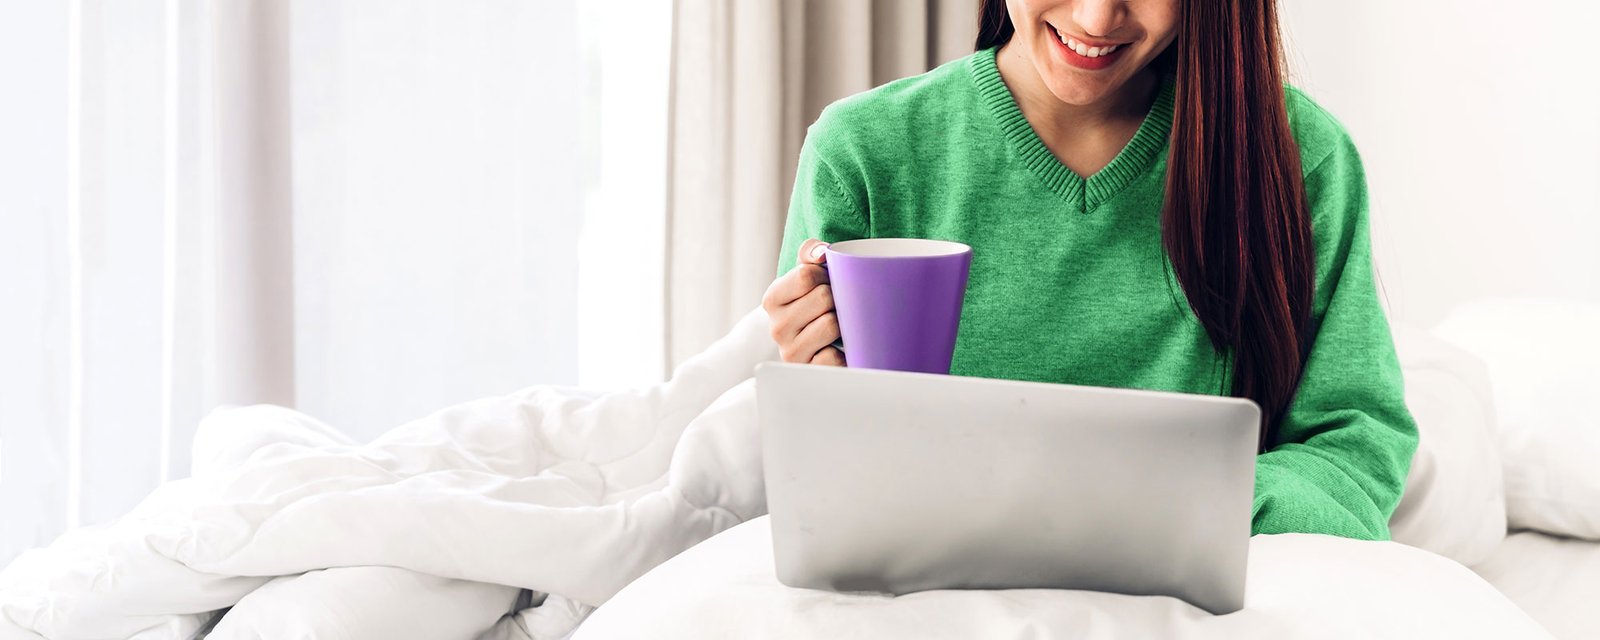 Nainen tietokoneella kahvikuppi kädessä, kuvituskuva.